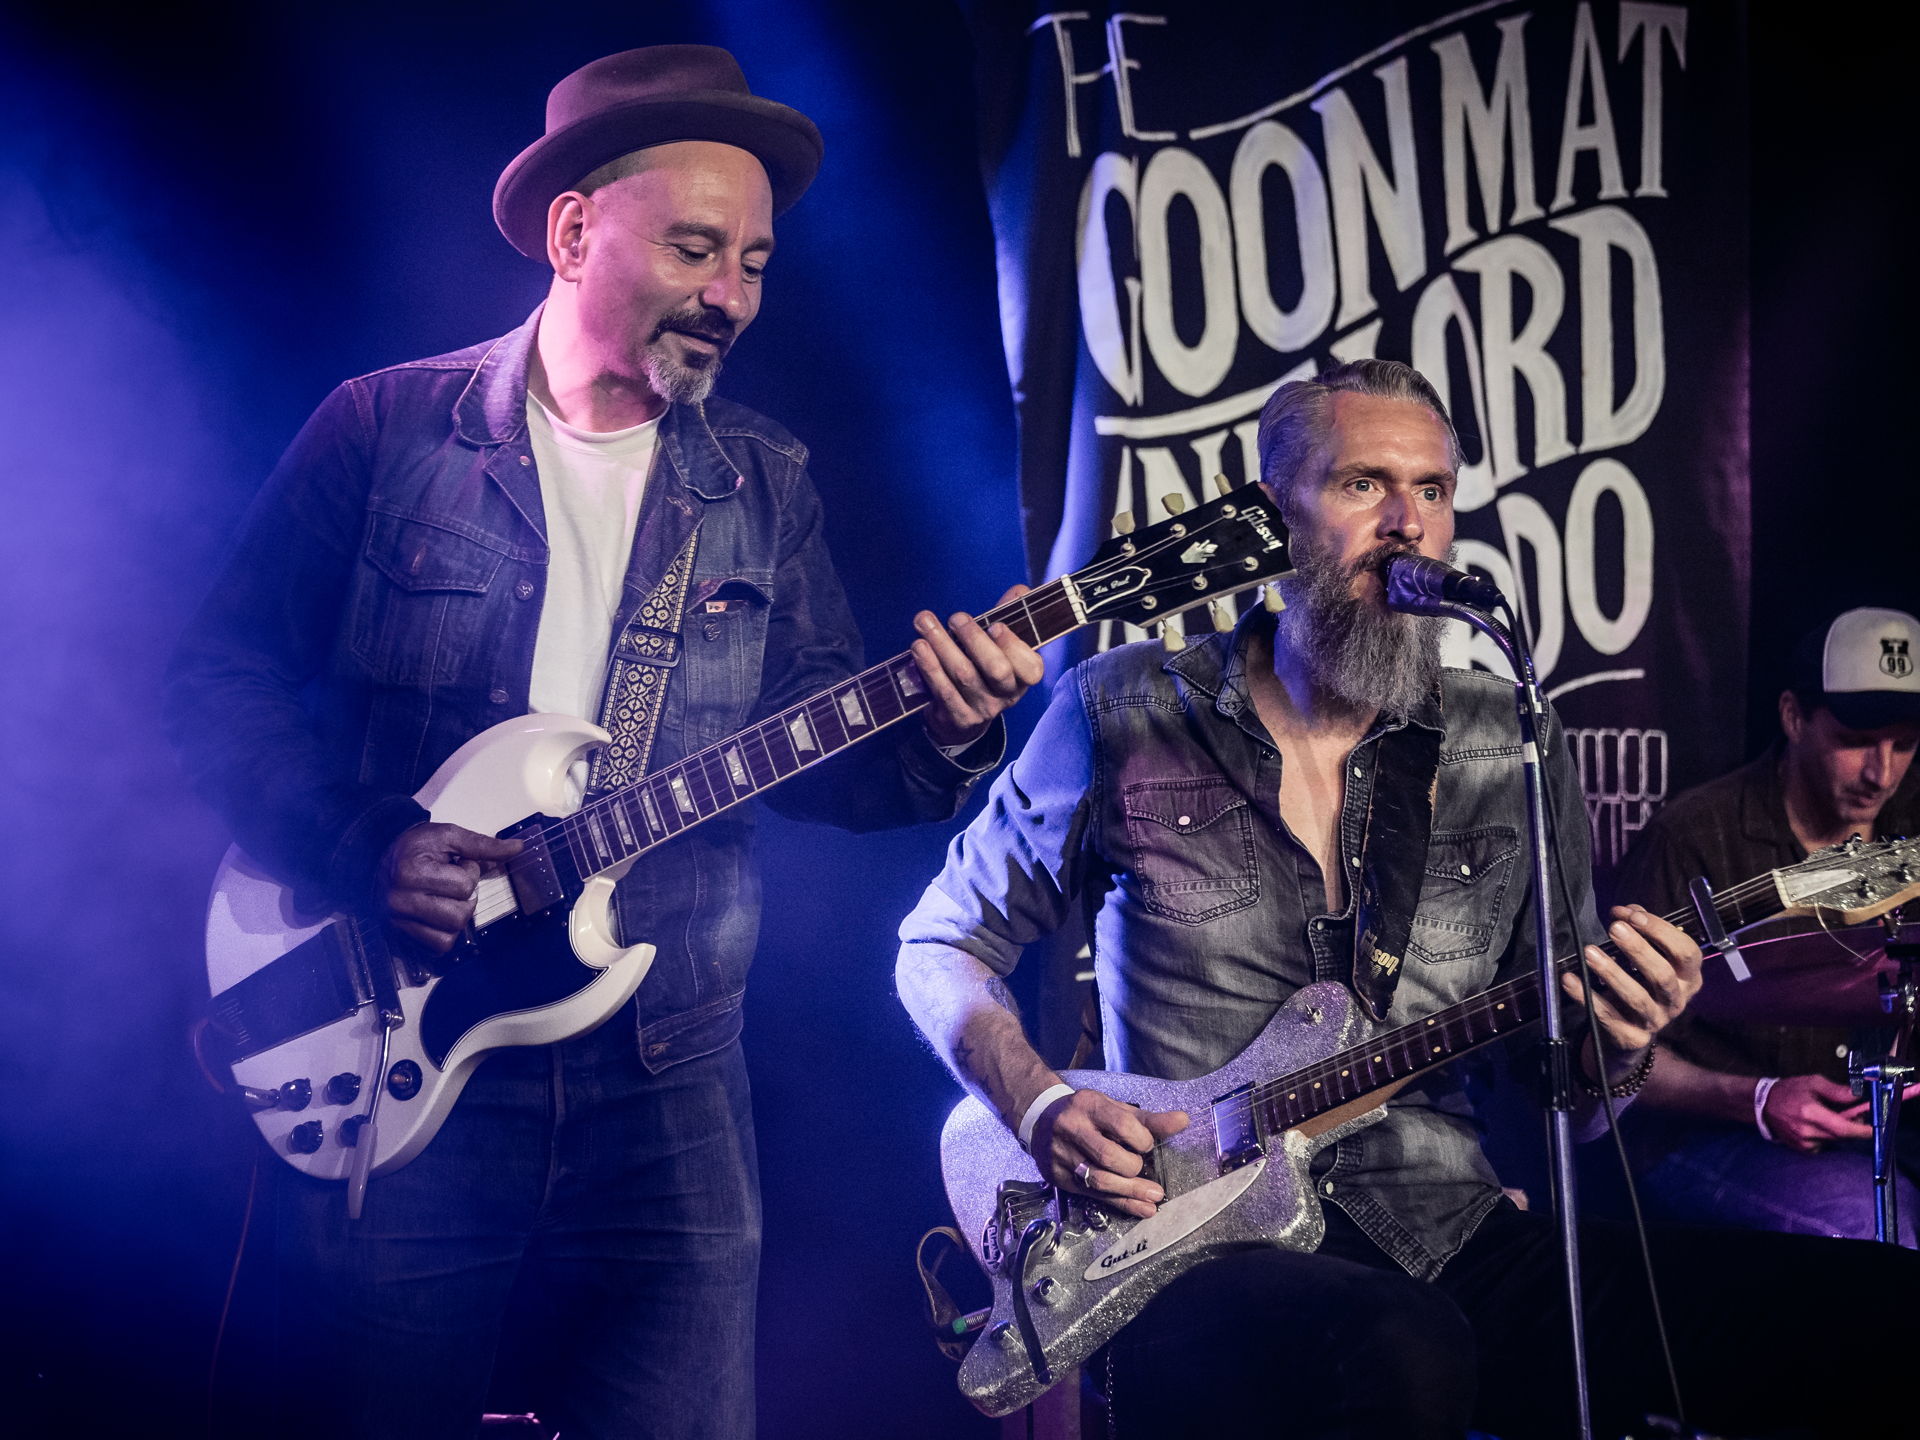 Op 5 oktober speelde The Goon Mat & Lord Benardo op de Bluesnight in Het Podium. Foto's door Photo Anya